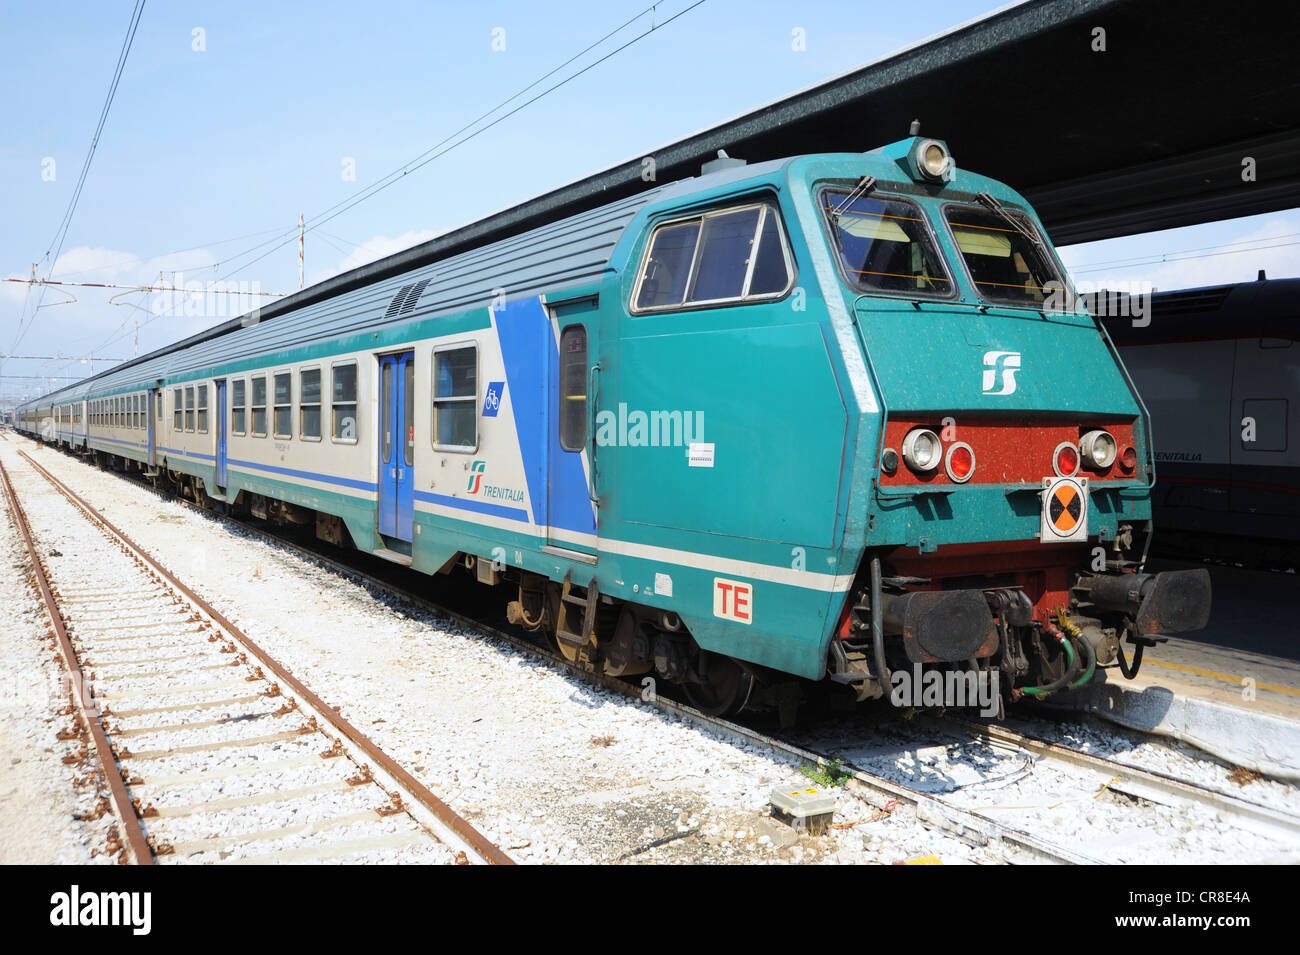 Train of Trenitalia, Italian railway company, Italy, Europe Stock Photo